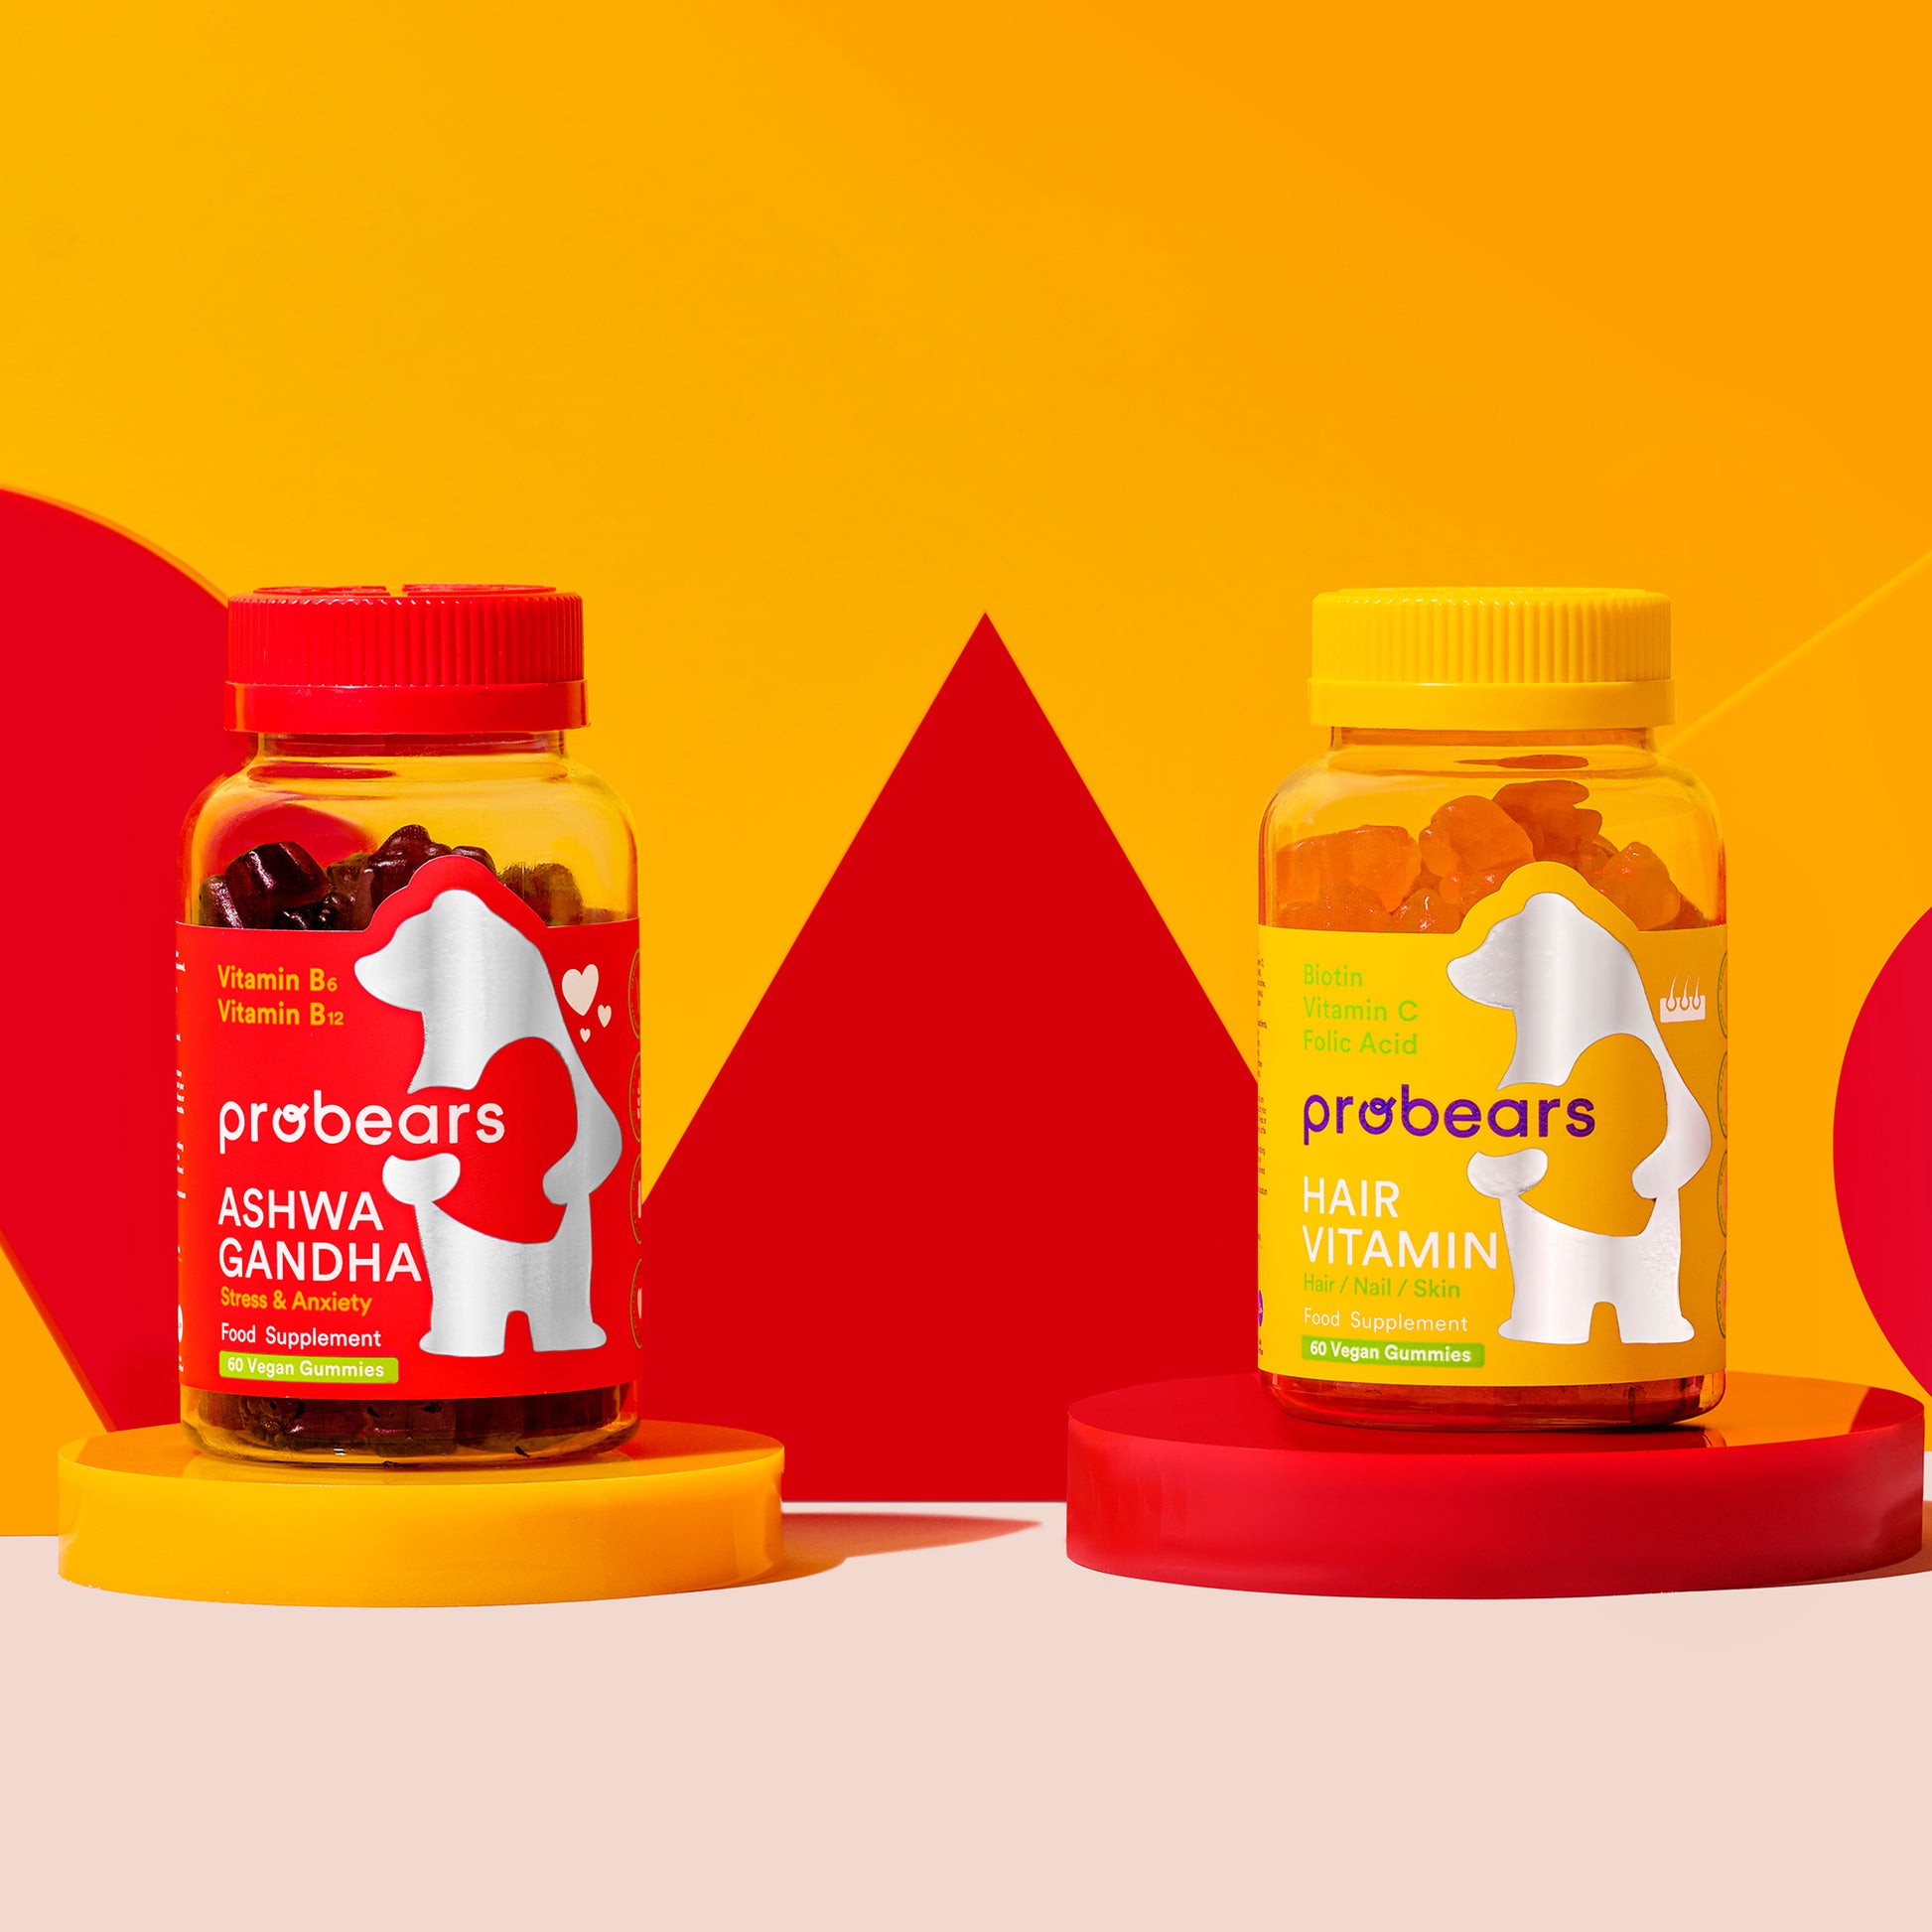 Zwei Flaschen von Probears Ashwagandha KSM-66 Gummibärchen, Vitamin B6 und B12 enthaltend, zur Stressreduzierung und Förderung der Entspannung, in einer roten und gelben Präsentation.